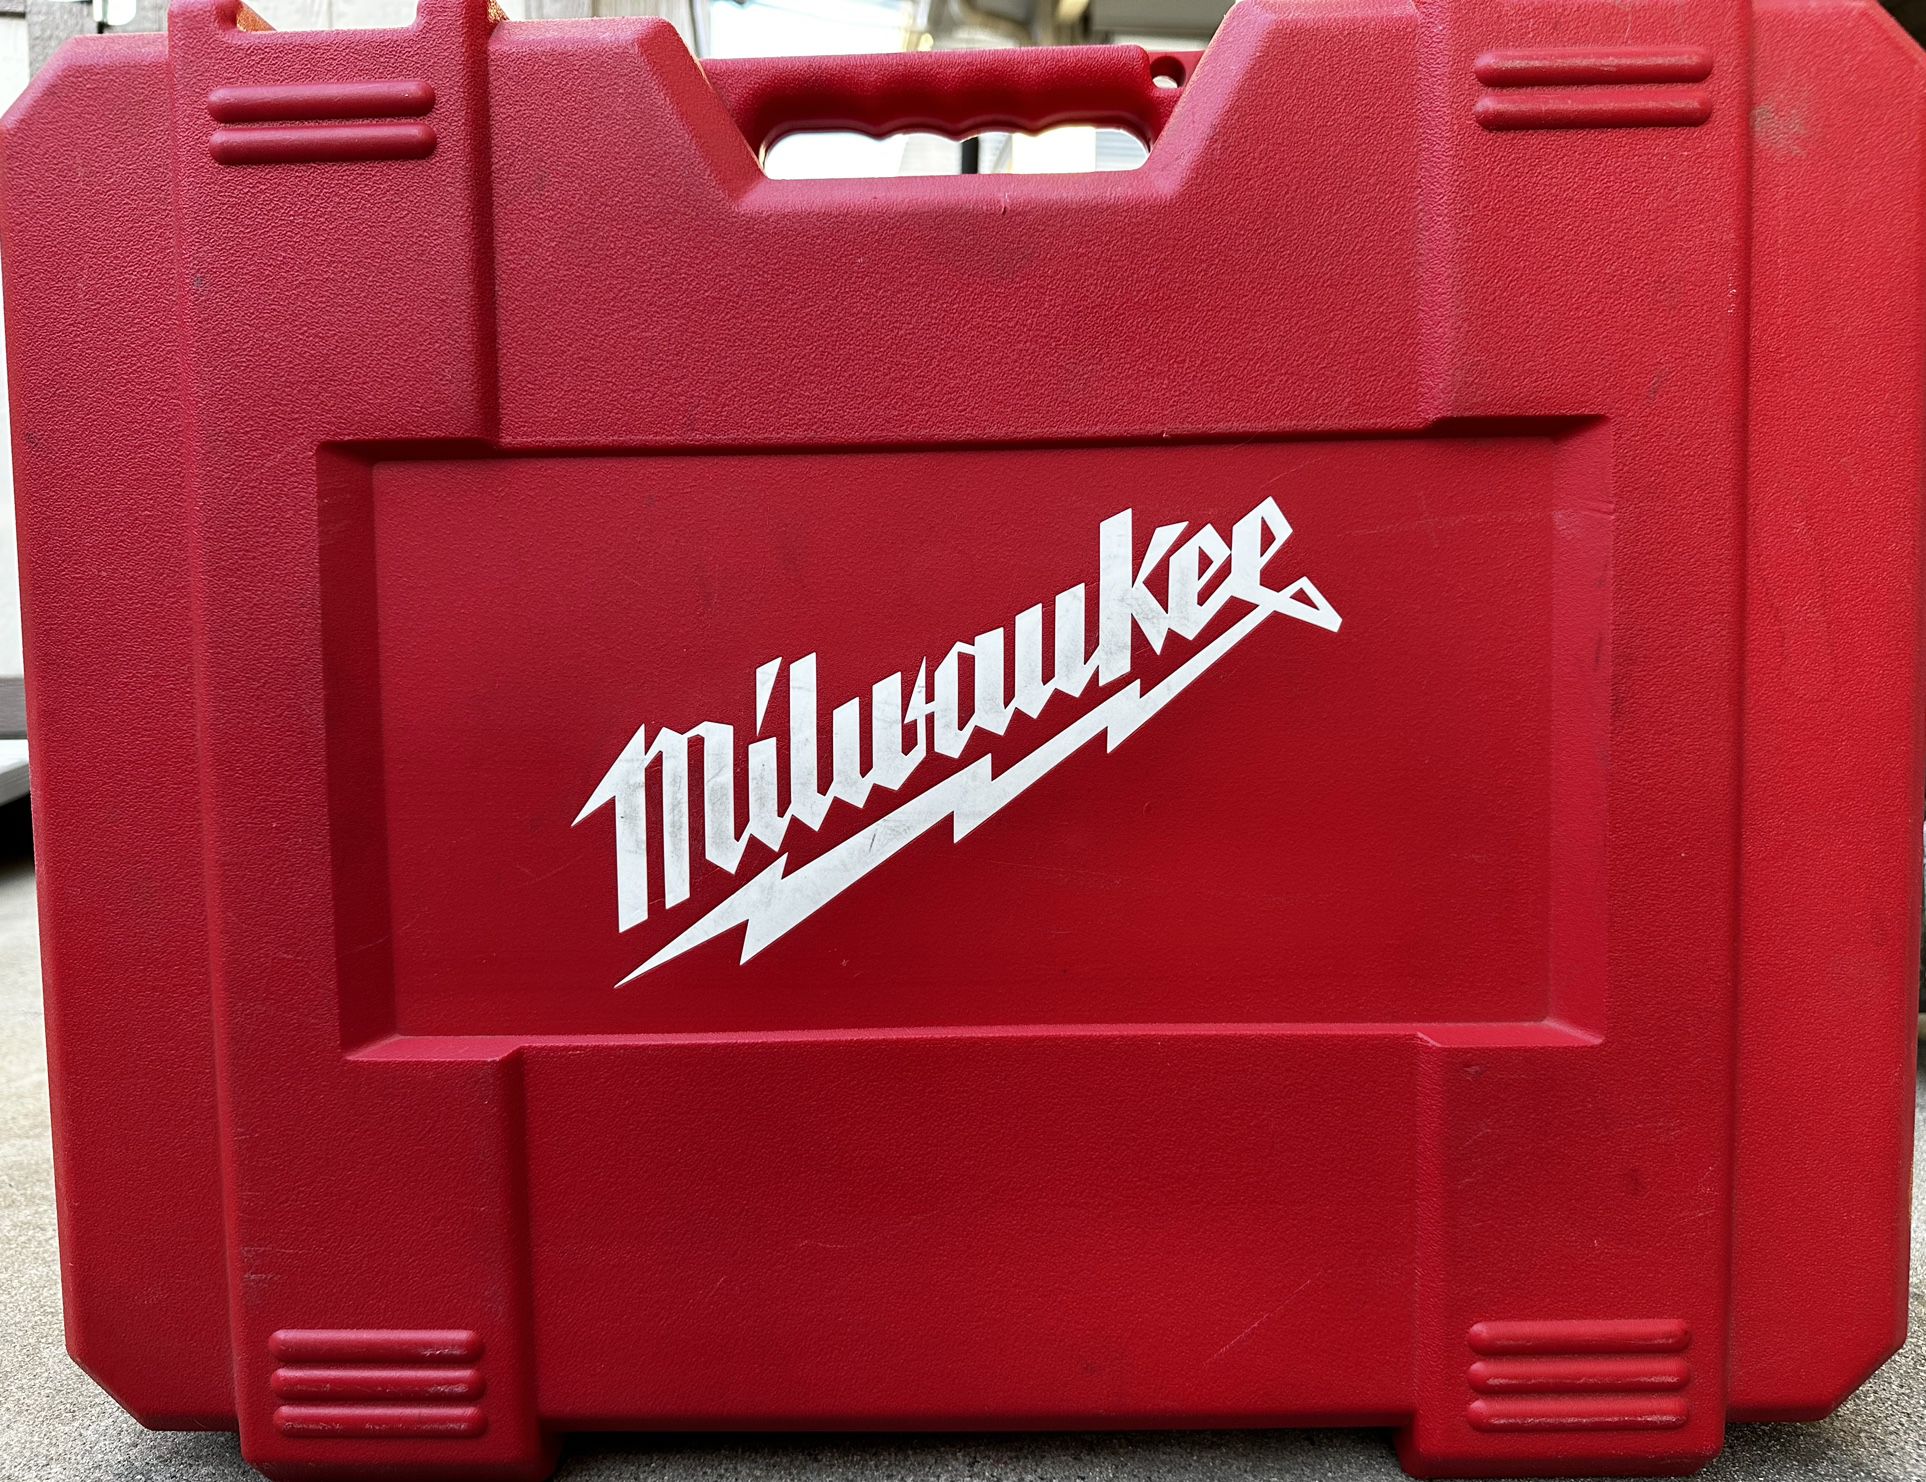 Milwaukee Drill And Sawzall Kit